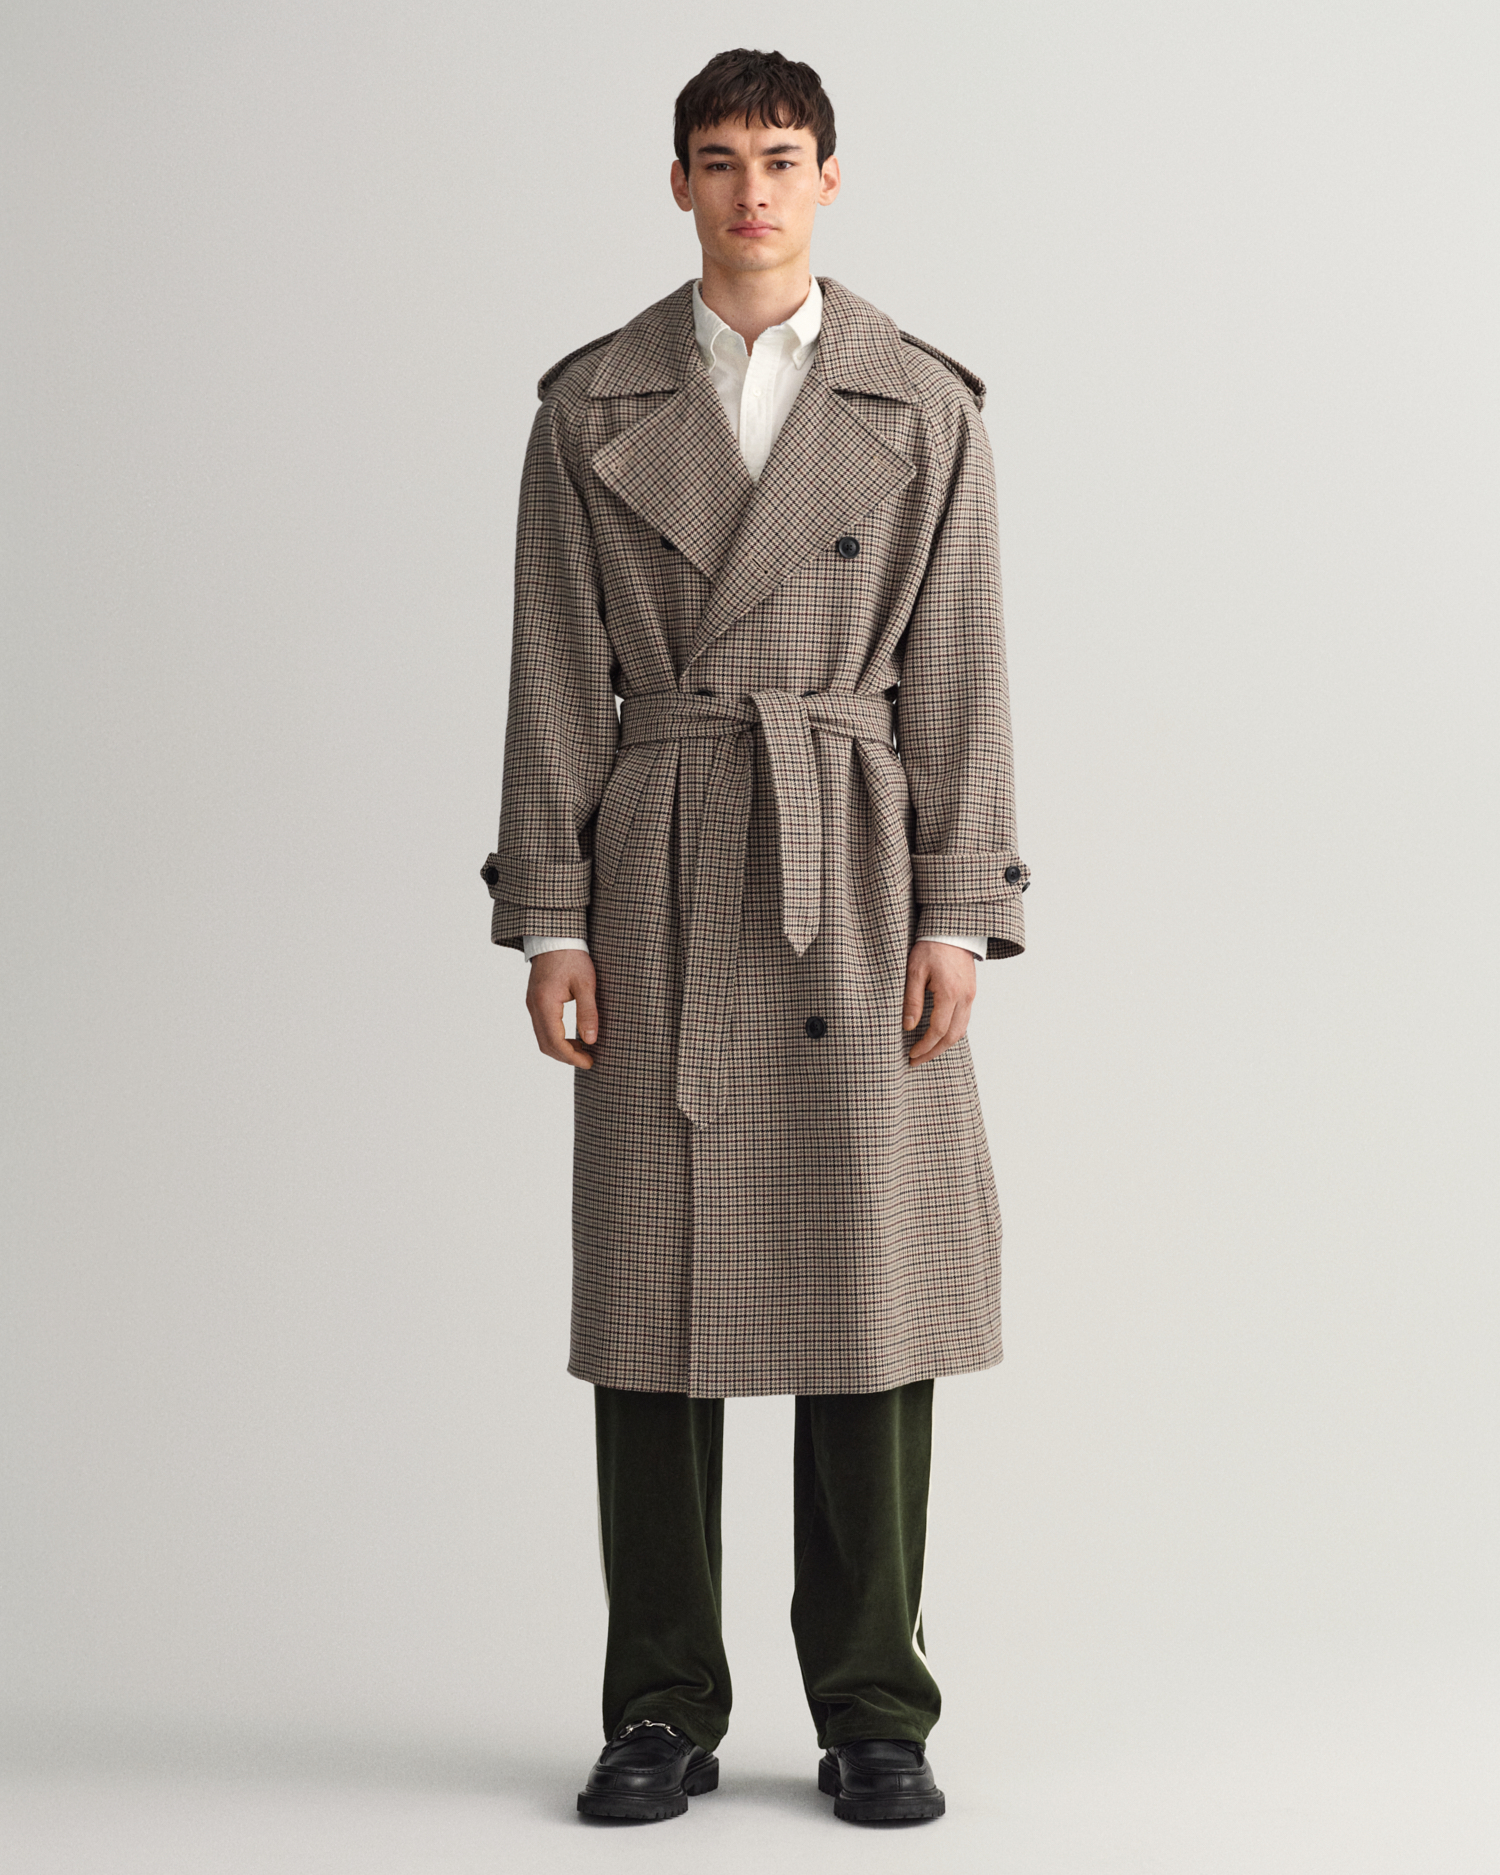 Manteau Homme Laine Hiver Chaud Trench-Coat Caban élégant Blouson Parka Veste Slim Fit Casual Coat 